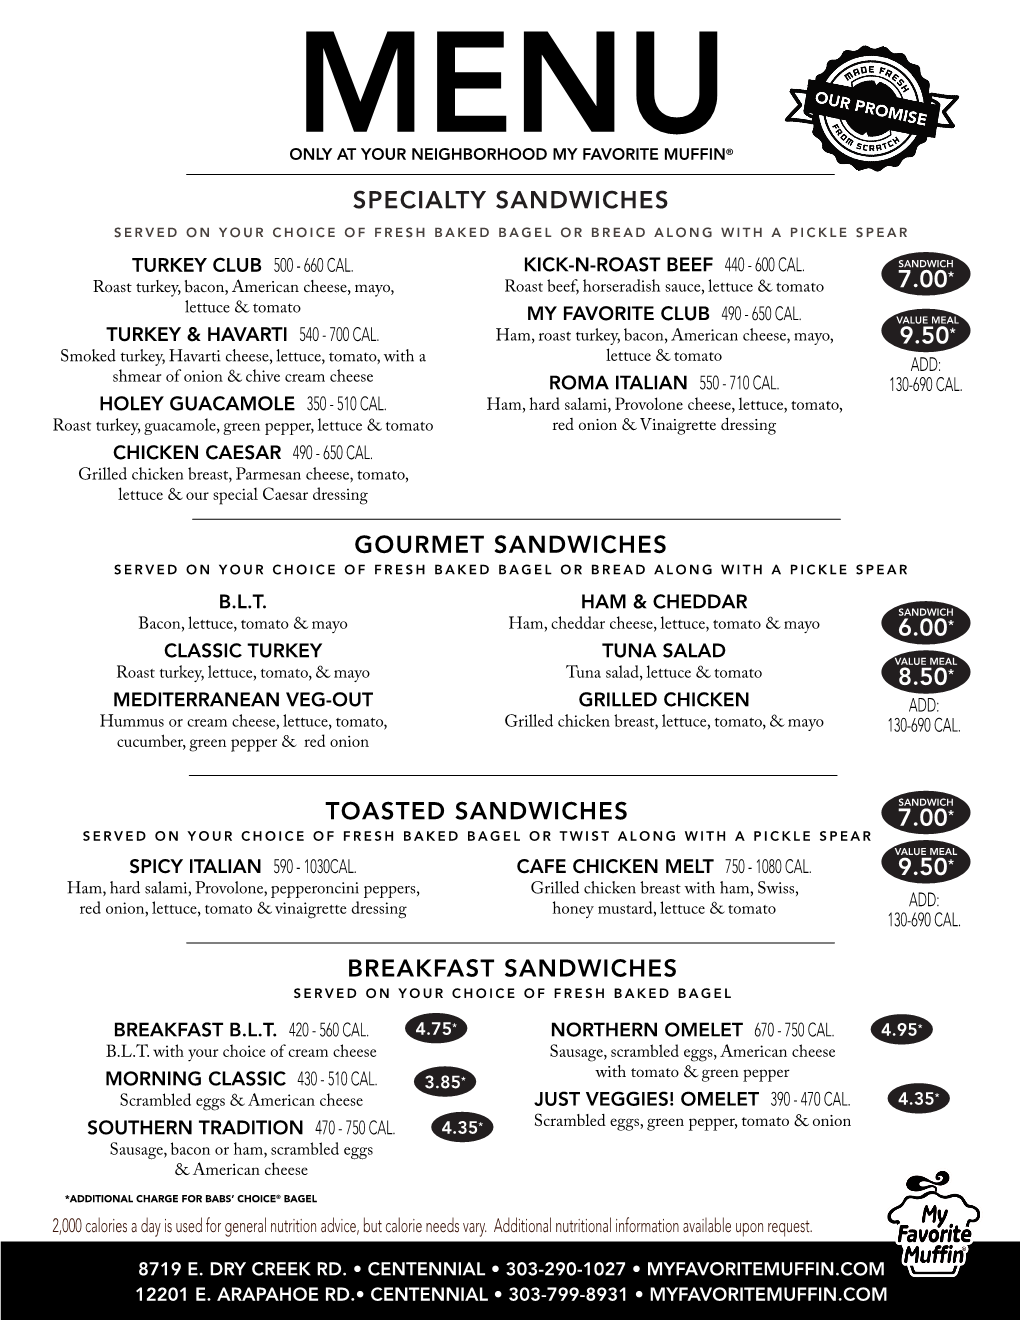 Breakfast Sandwiches Specialty Sandwiches 9.50